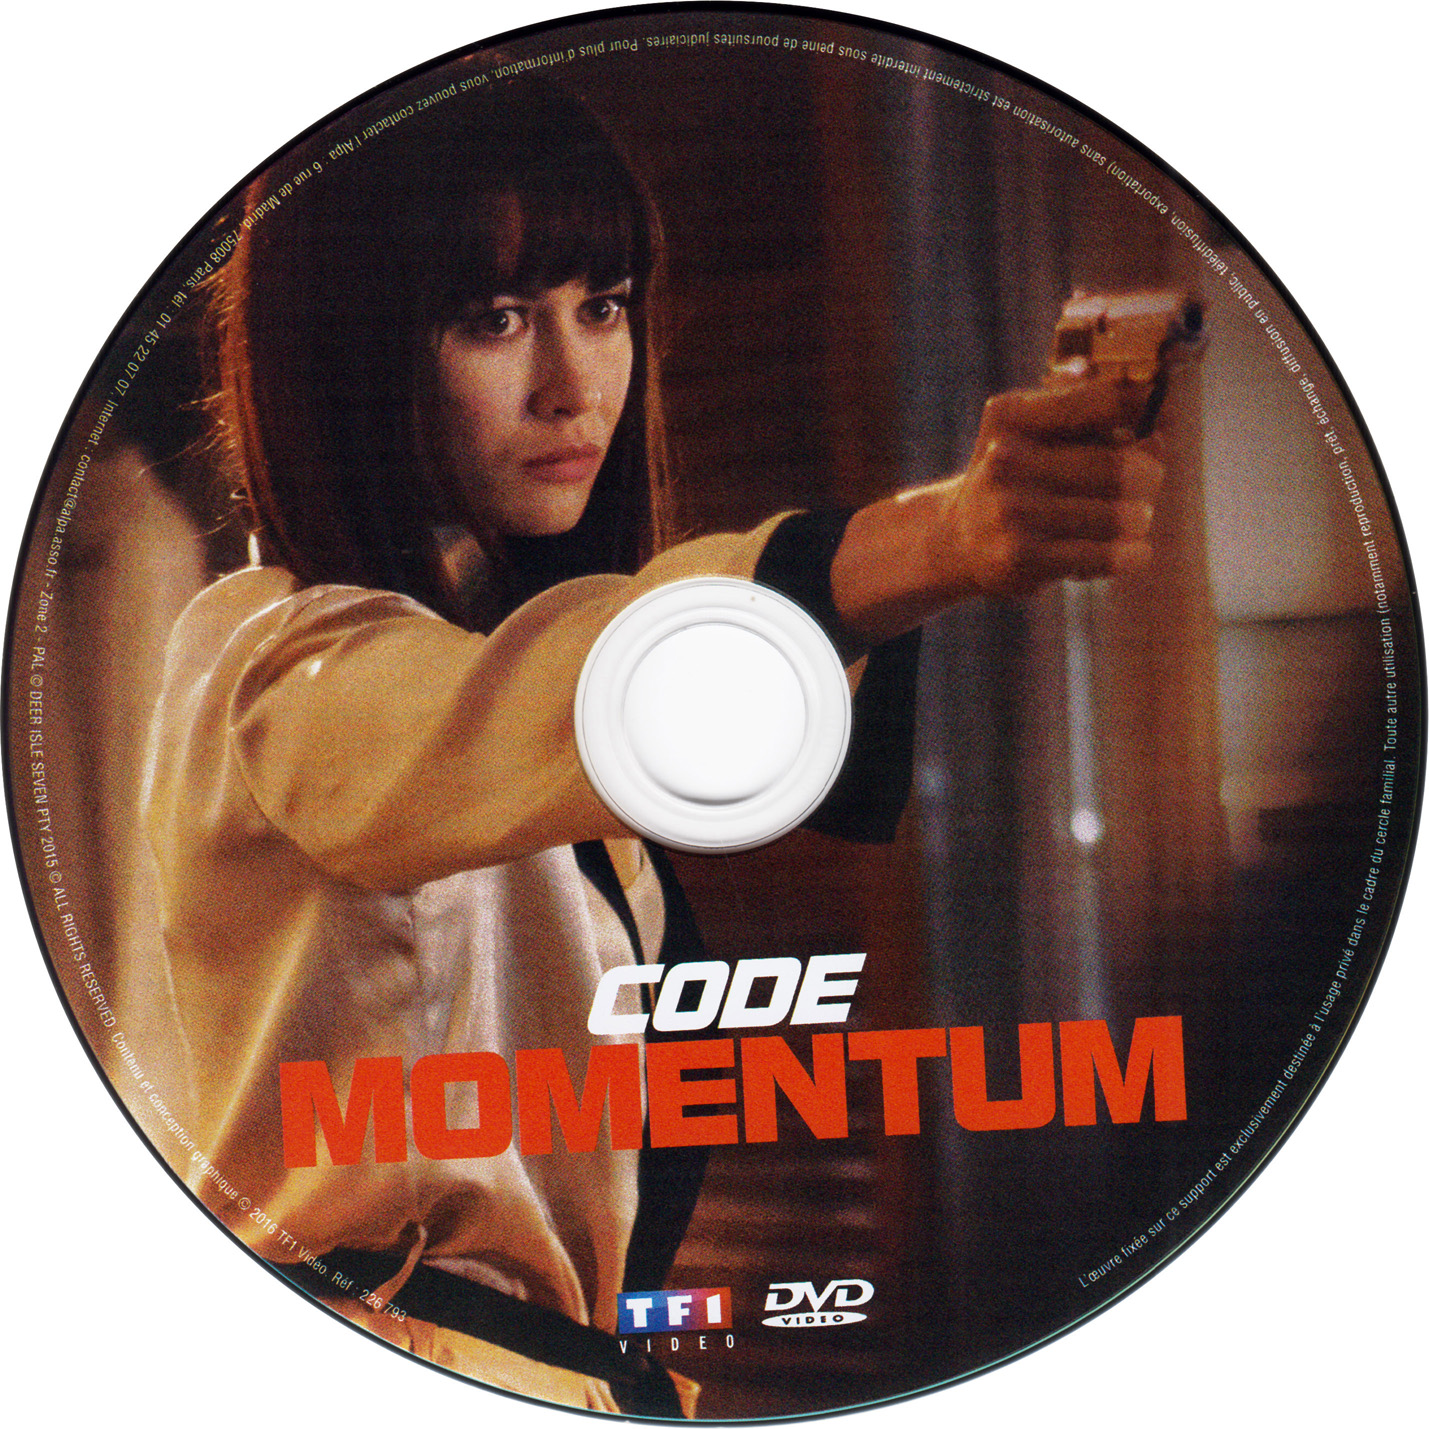 Code momentum